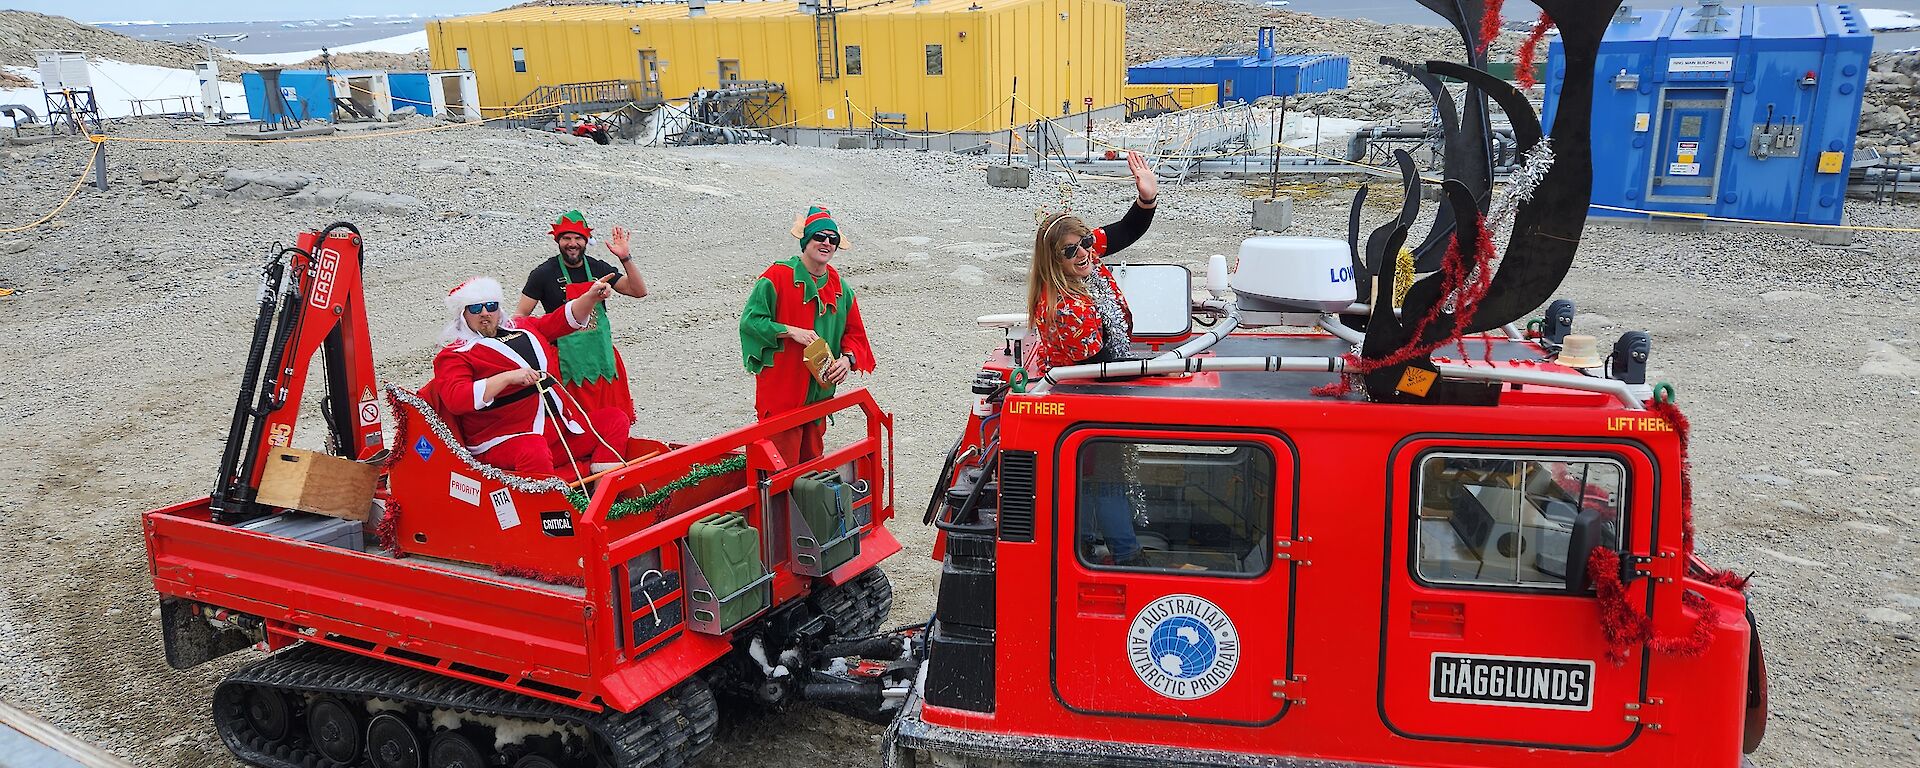 Red Hagglund oversnow vehicle decorated as Santas reindeer.